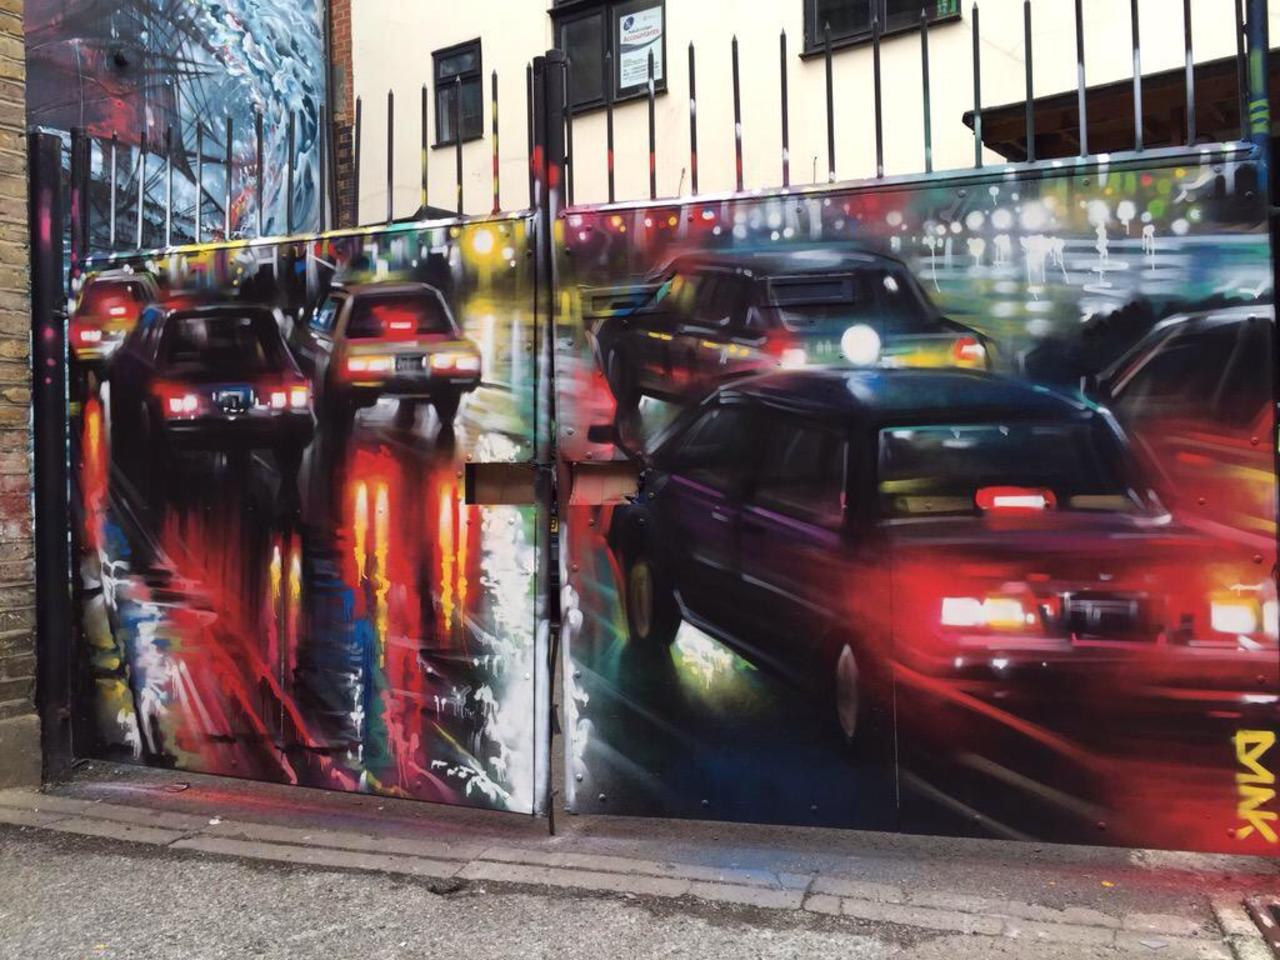 New Street Art by DanKitchener in Brick Lane London 

#art #graffiti #mural #streetart http://t.co/TqPMMIU5a2